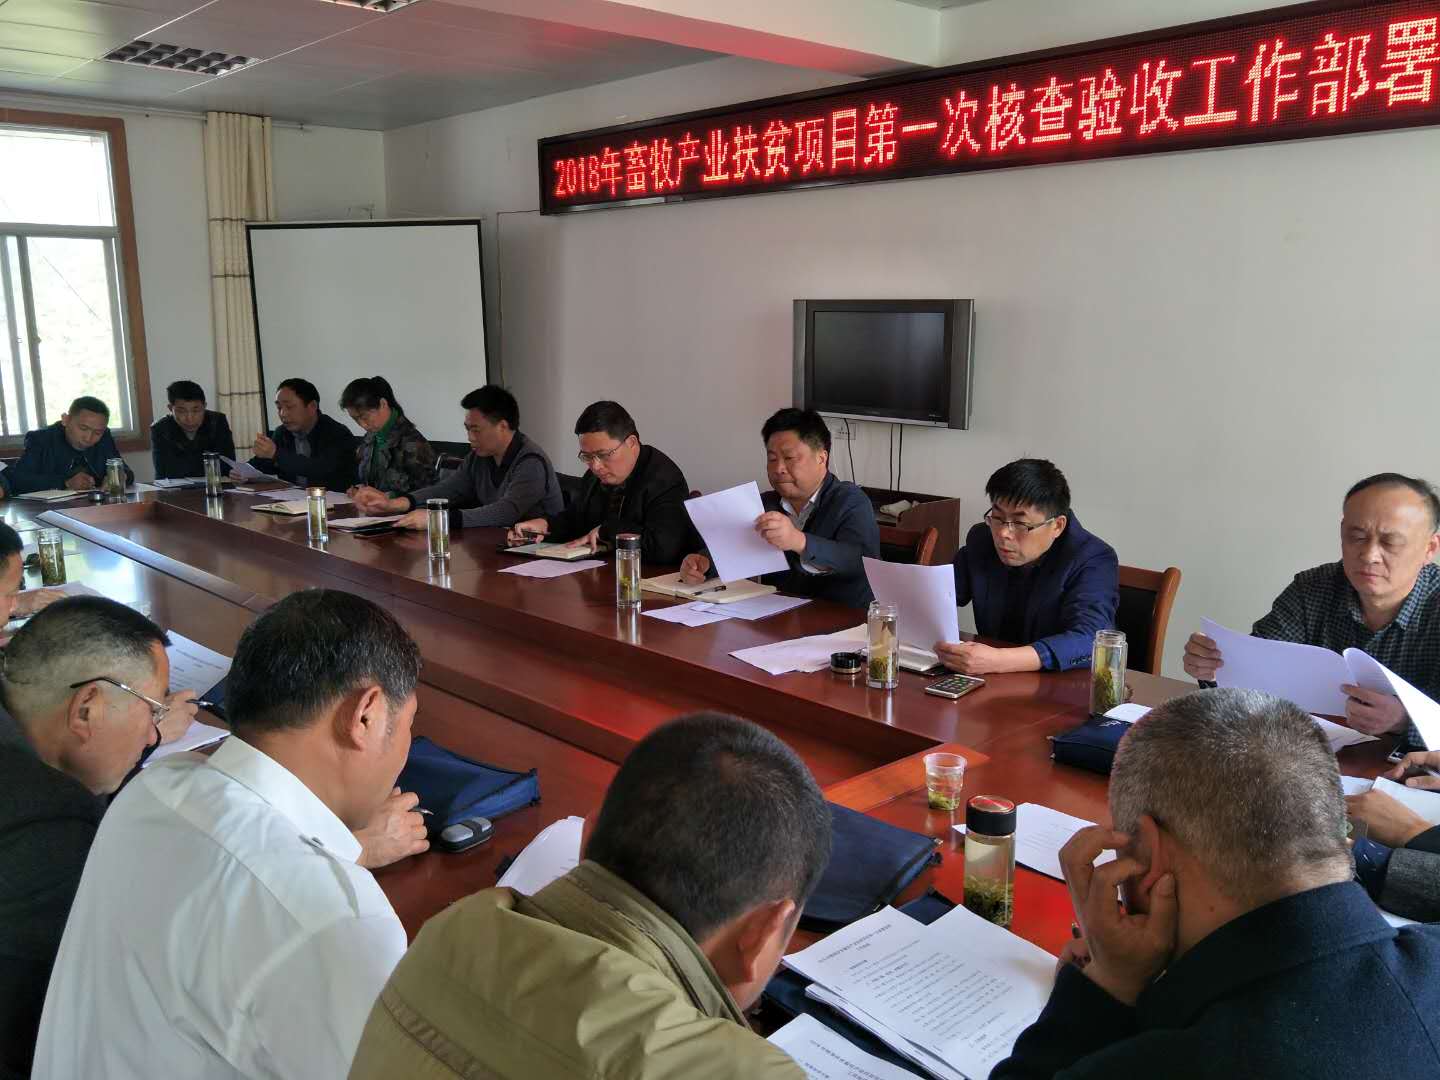 大悟县畜牧兽医局召开2018年产业扶贫项目第一轮核查验收工作部署会